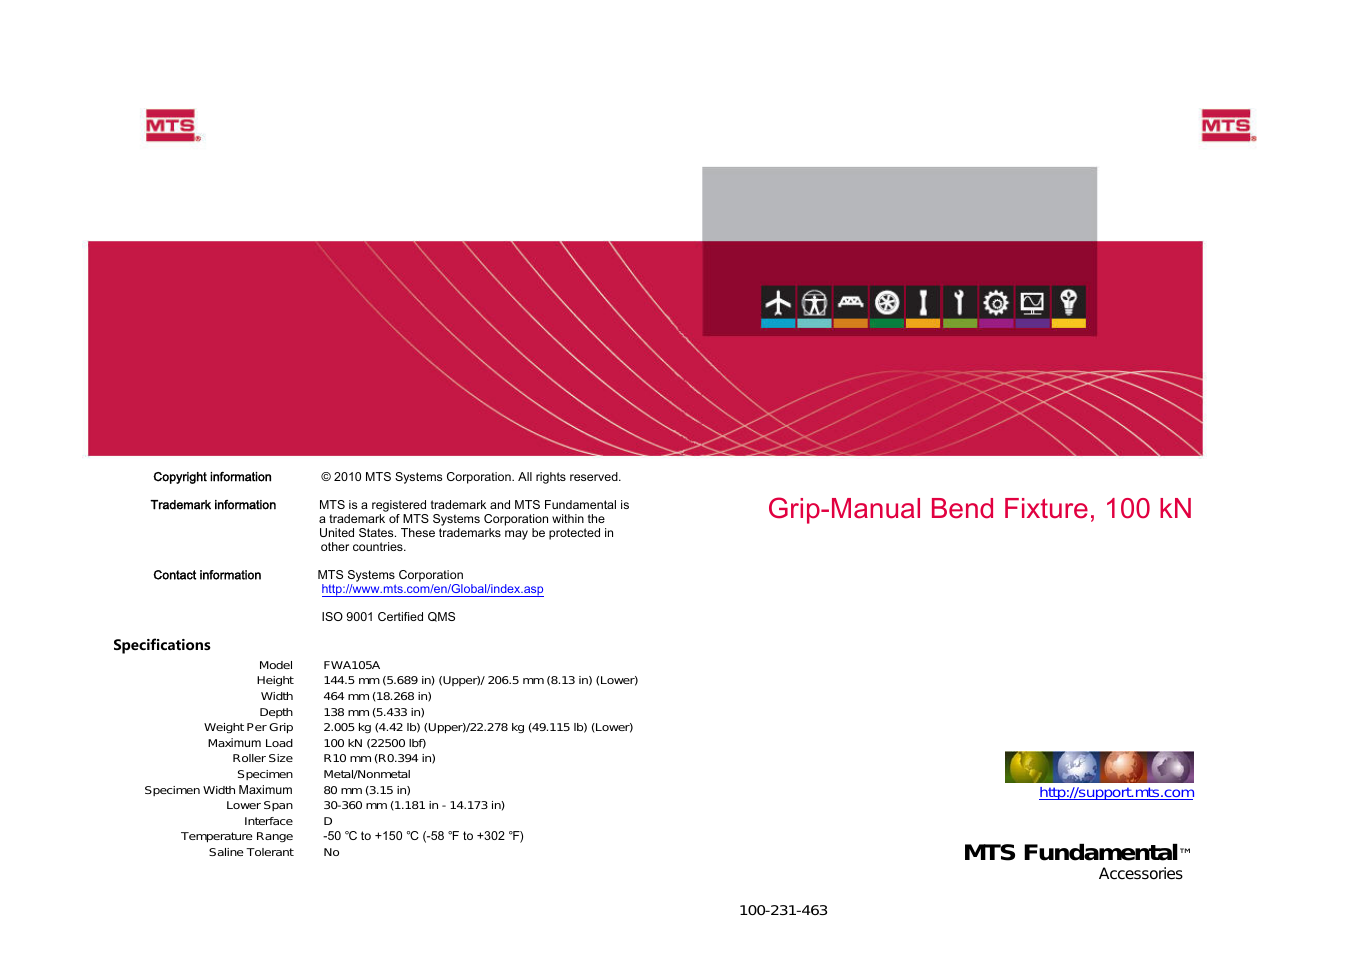 Grip-Manual Bend Fixture-100 kN